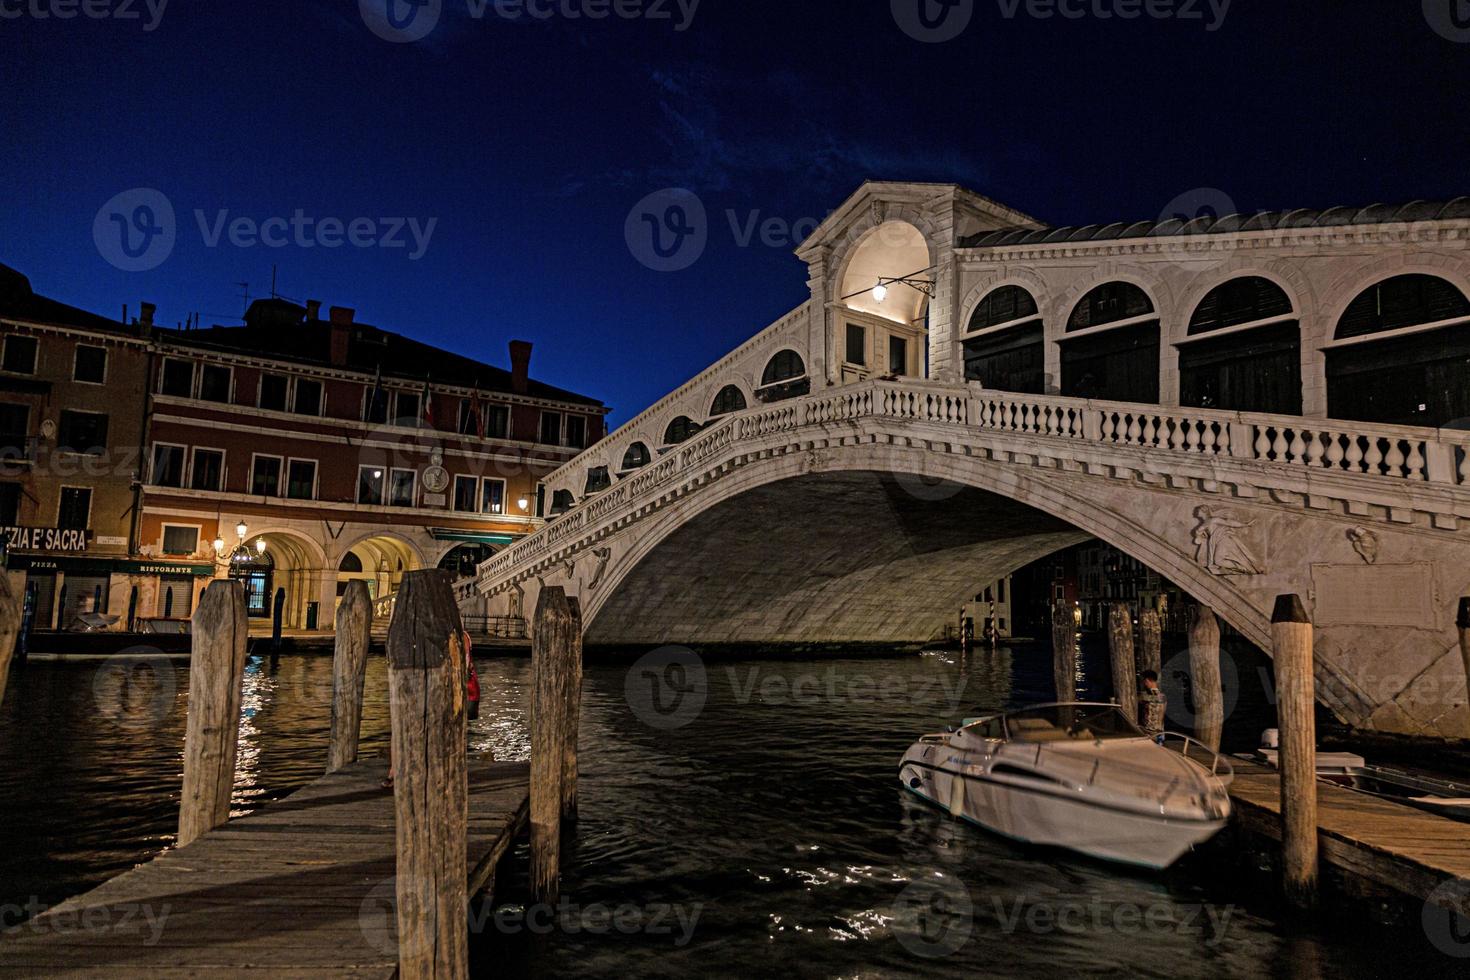 vista del puente de rialto en venecia sin gente durante el cierre de covid-19 foto